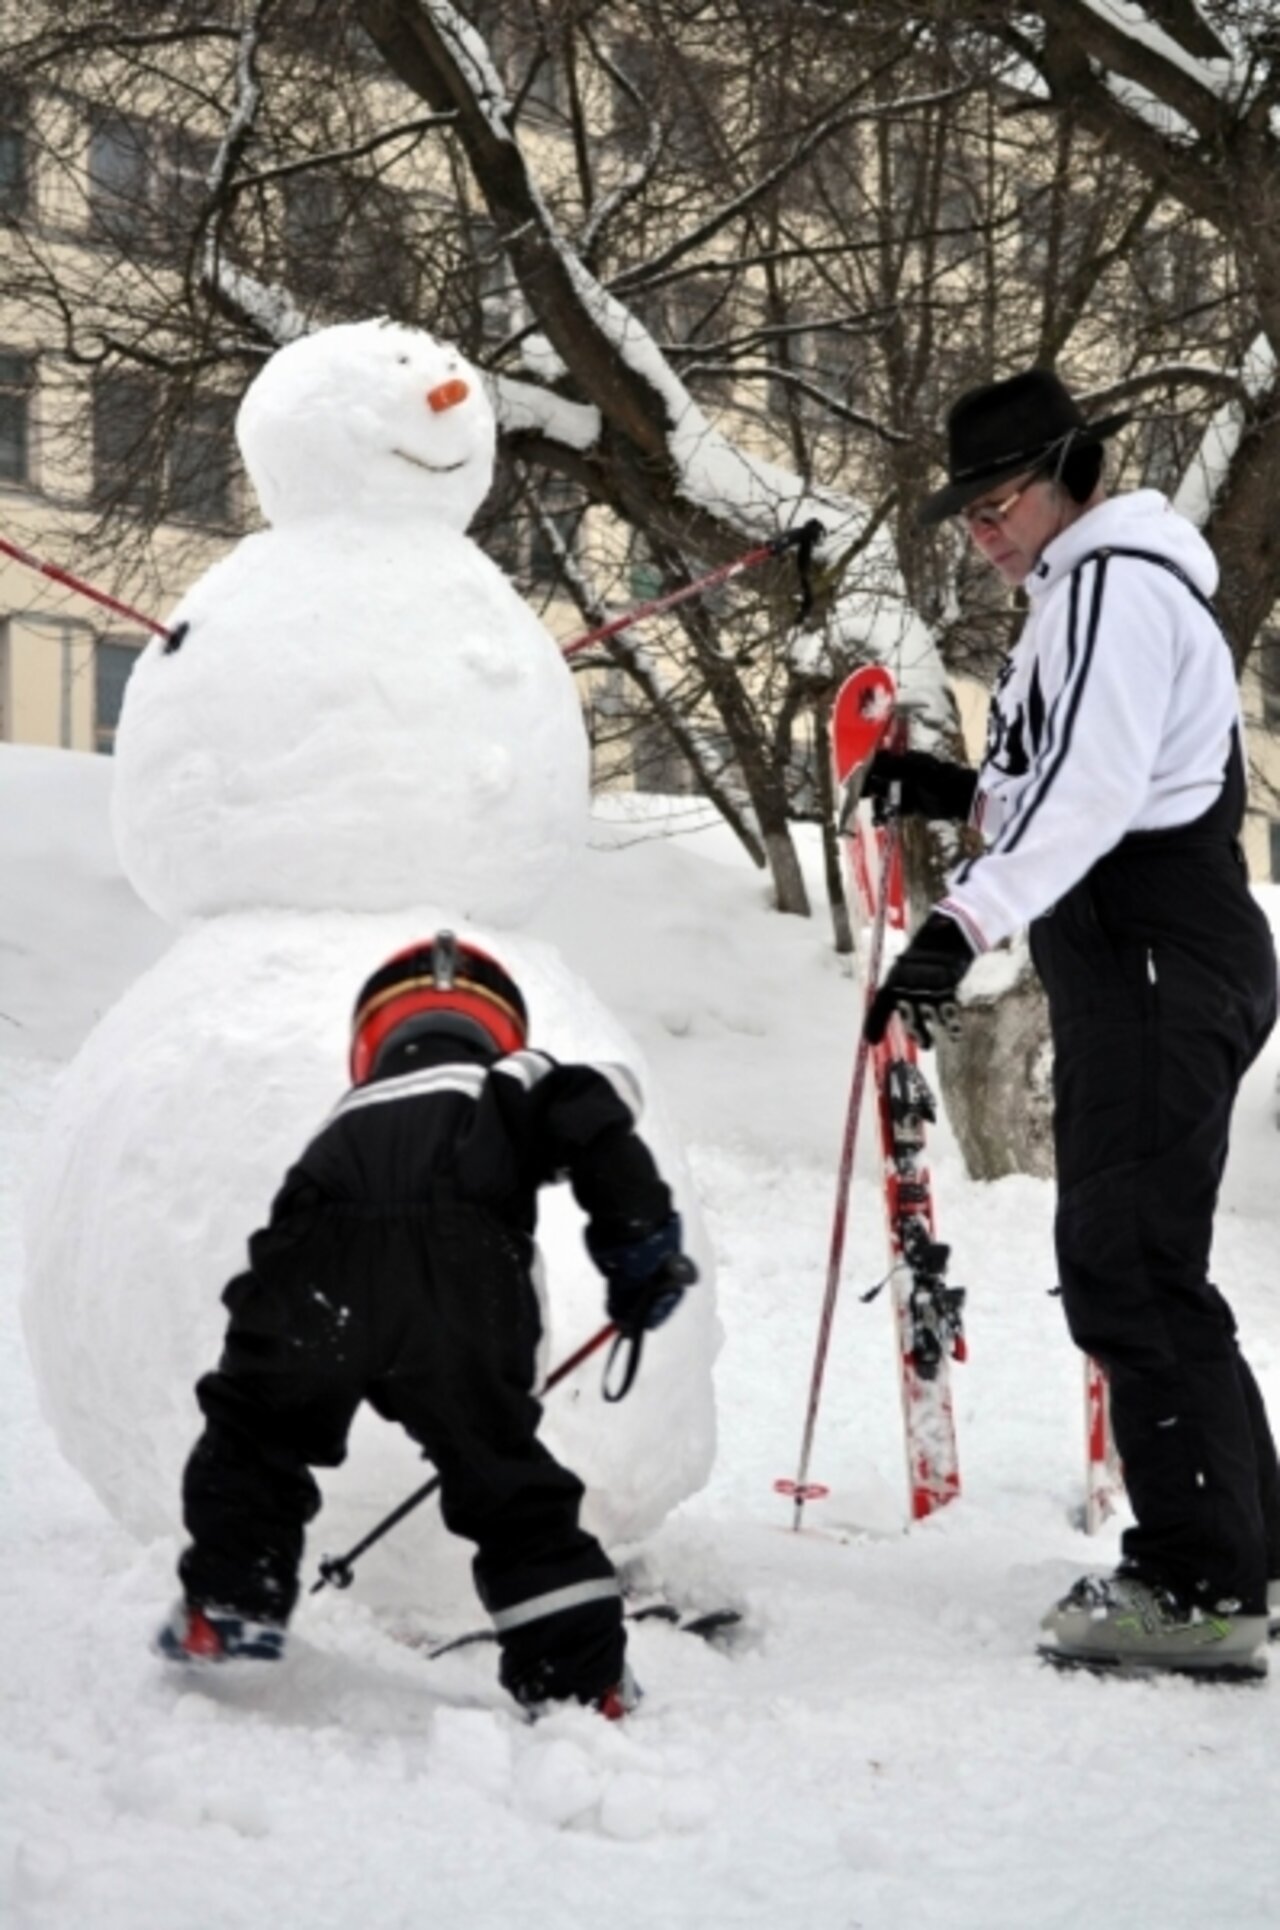 Вот такой снеговик горнолыжников - и сам на лыжах)))Егорка с папой. svetlyichok